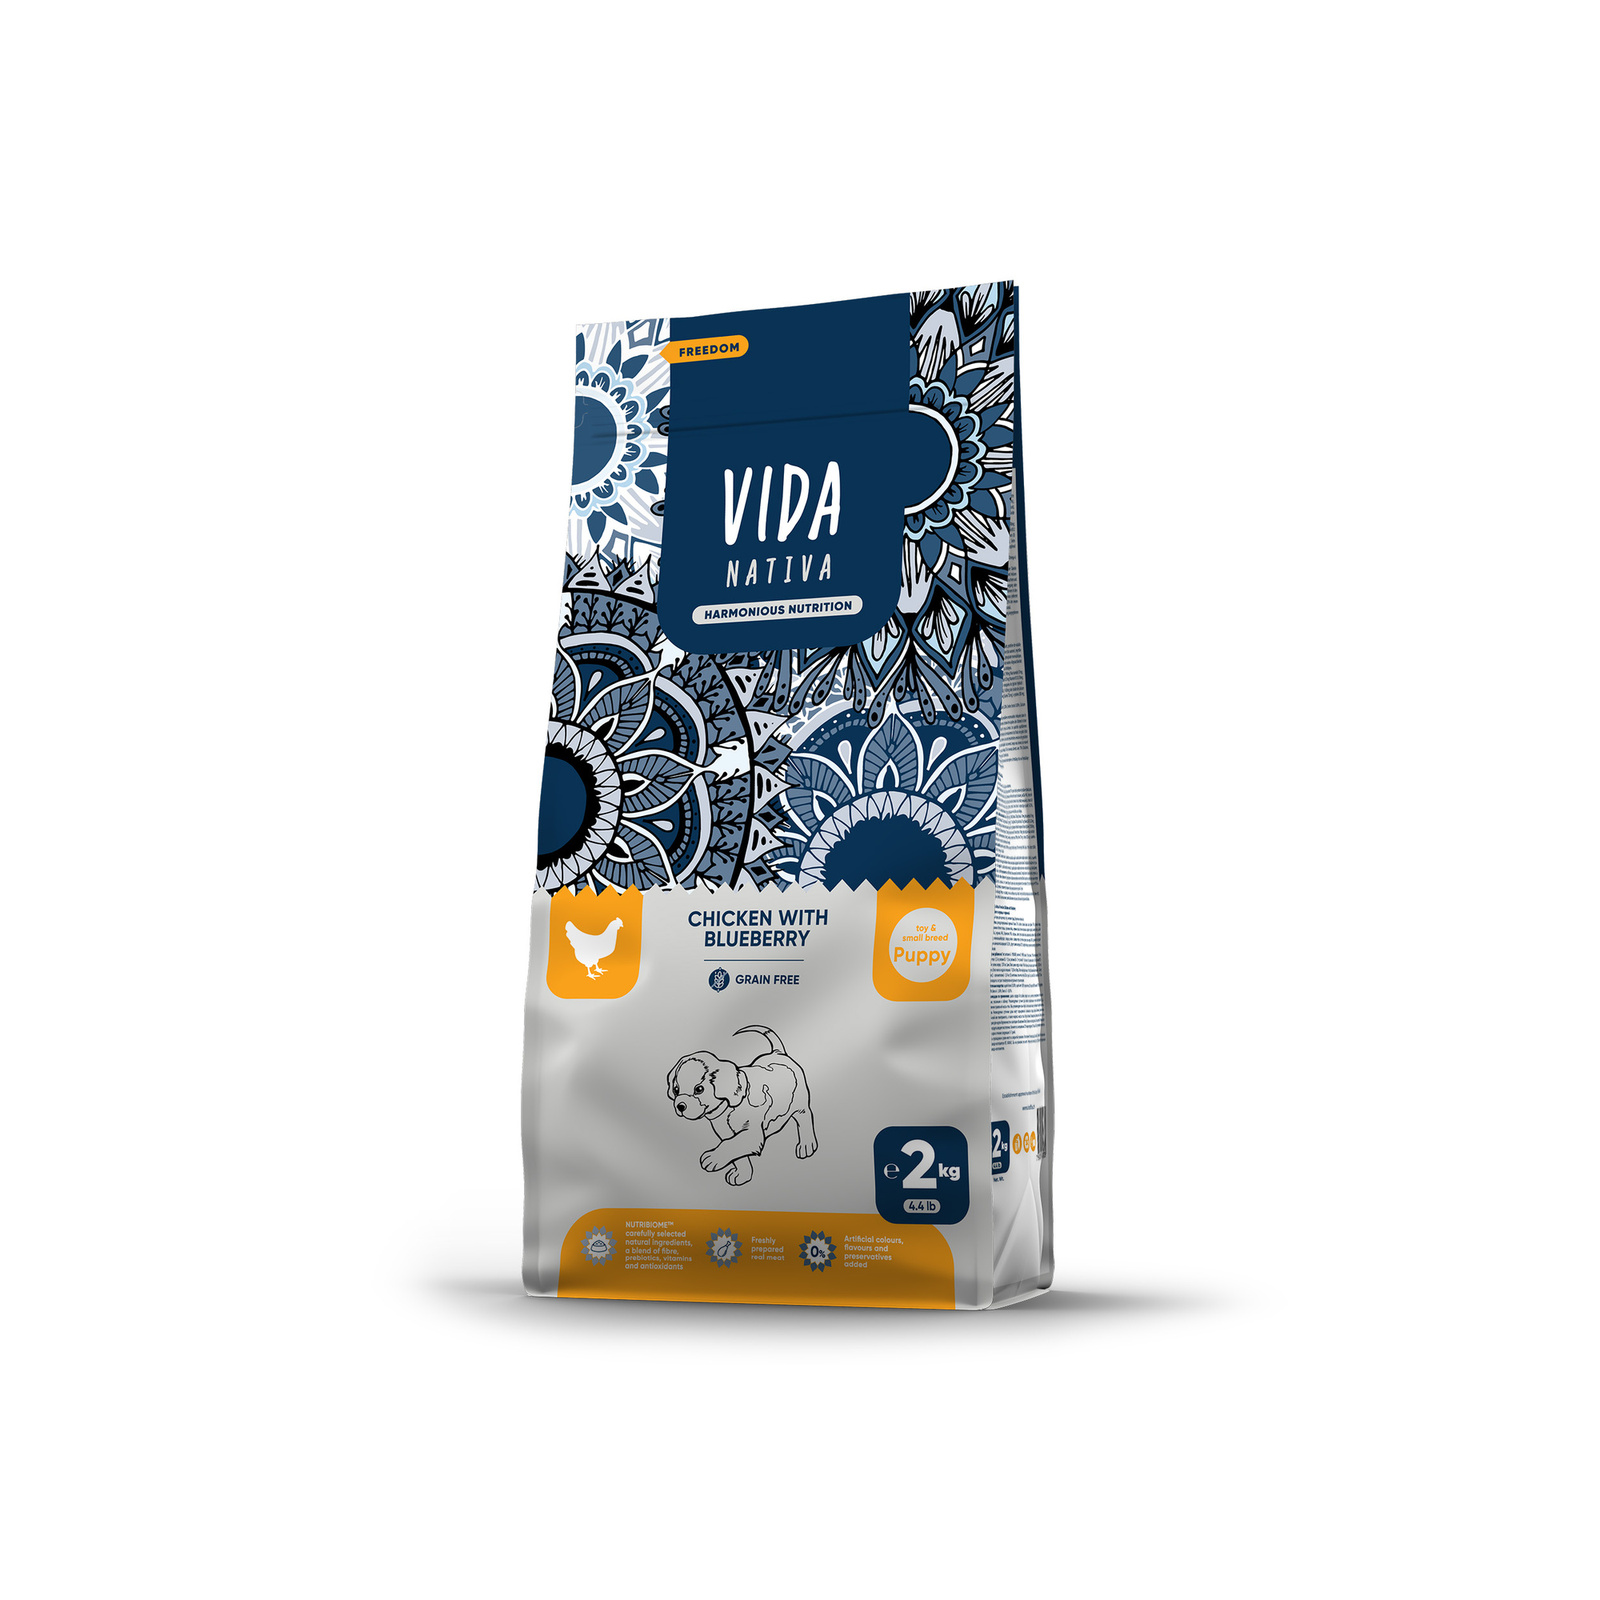 VIDA Nativa корм для щенков мелких пород с курицей и черникой (2 кг)